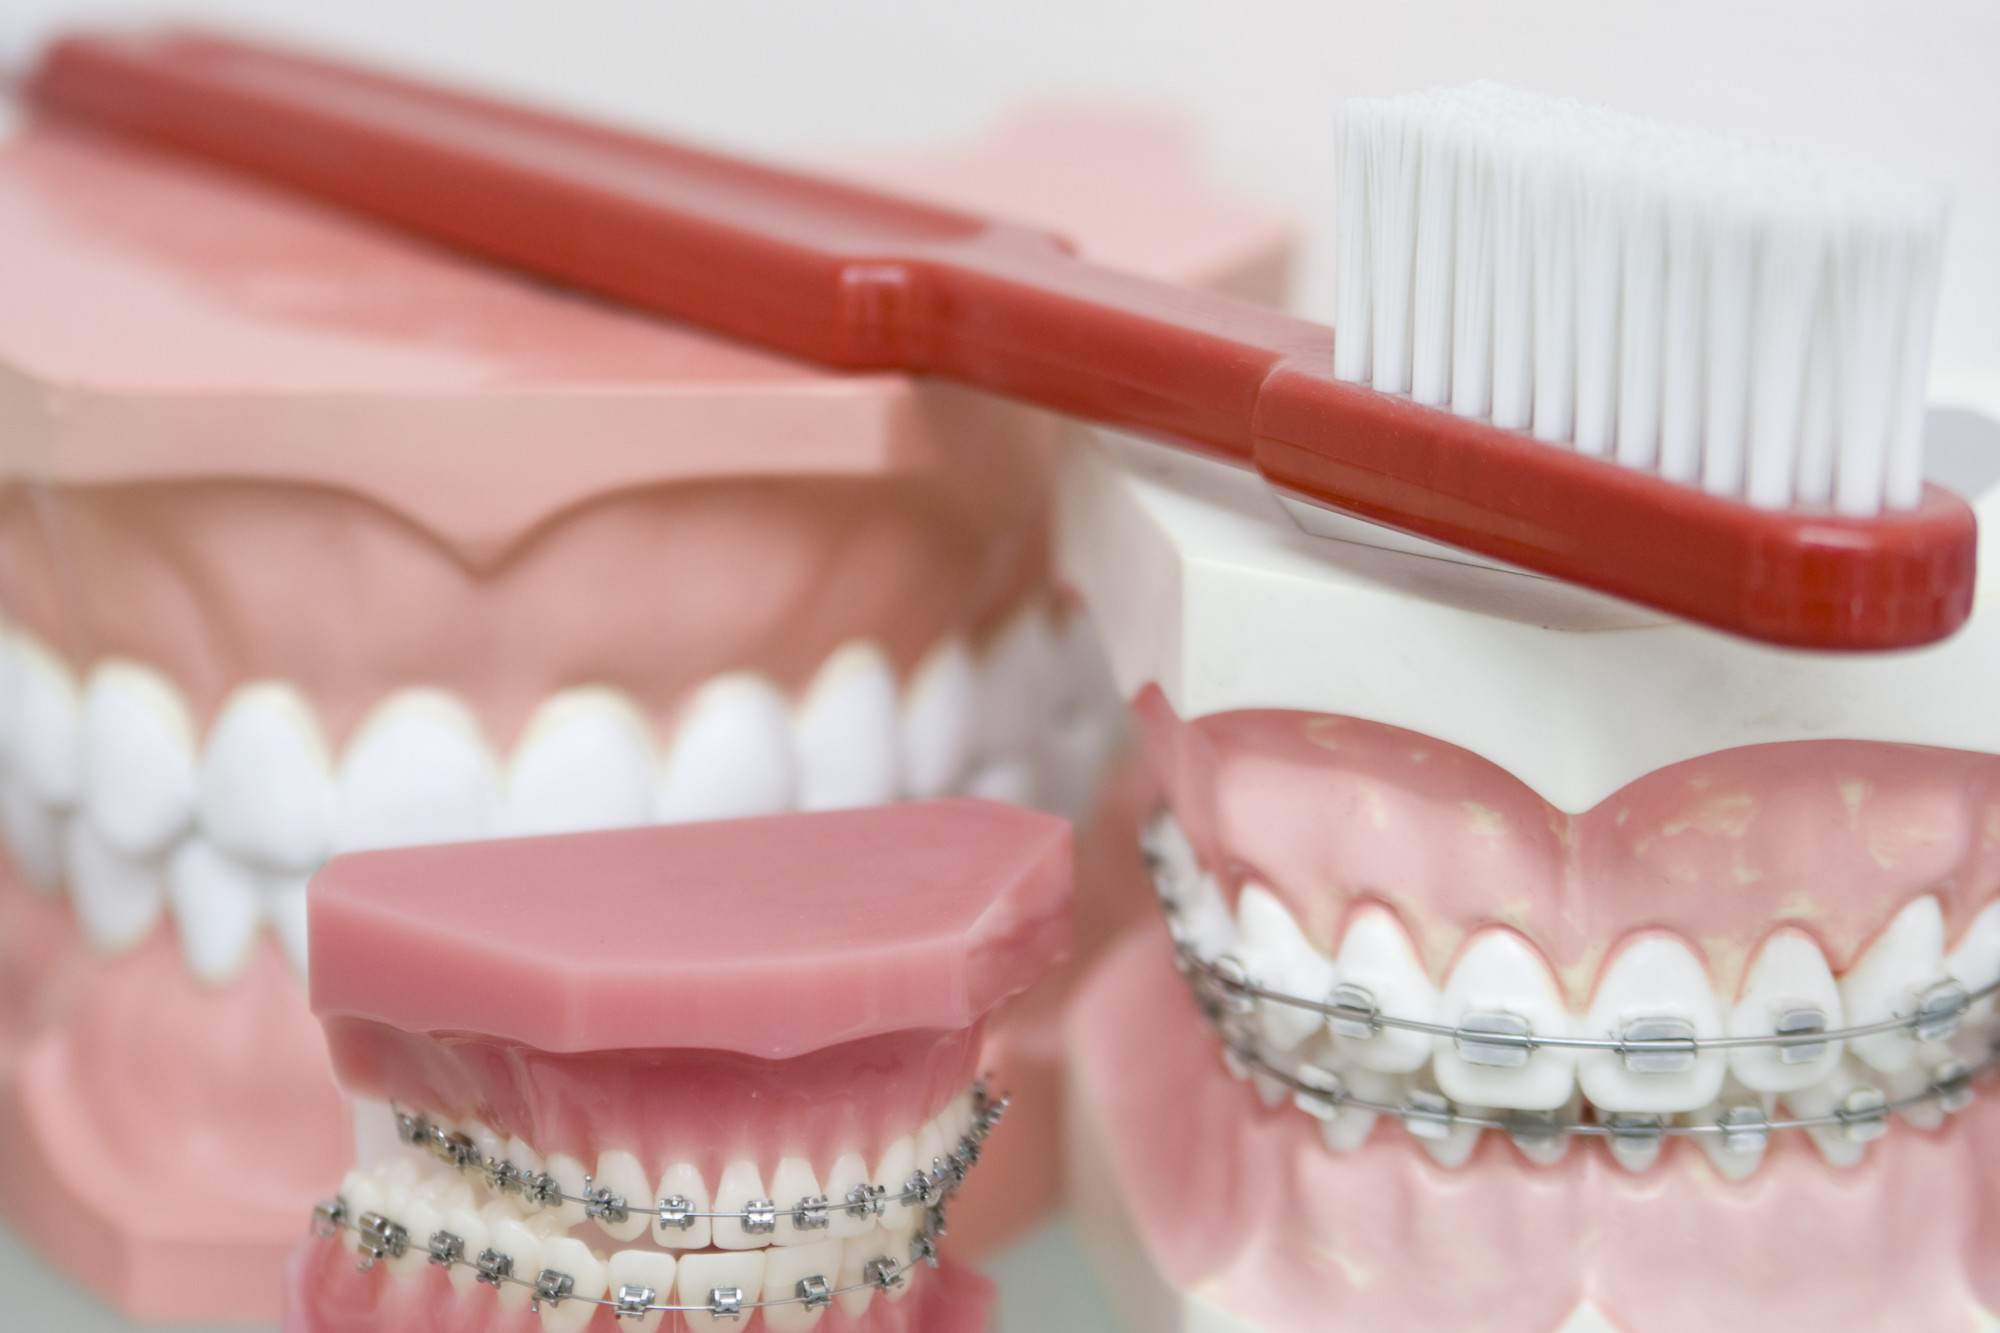 Zähne und Zahnbürste